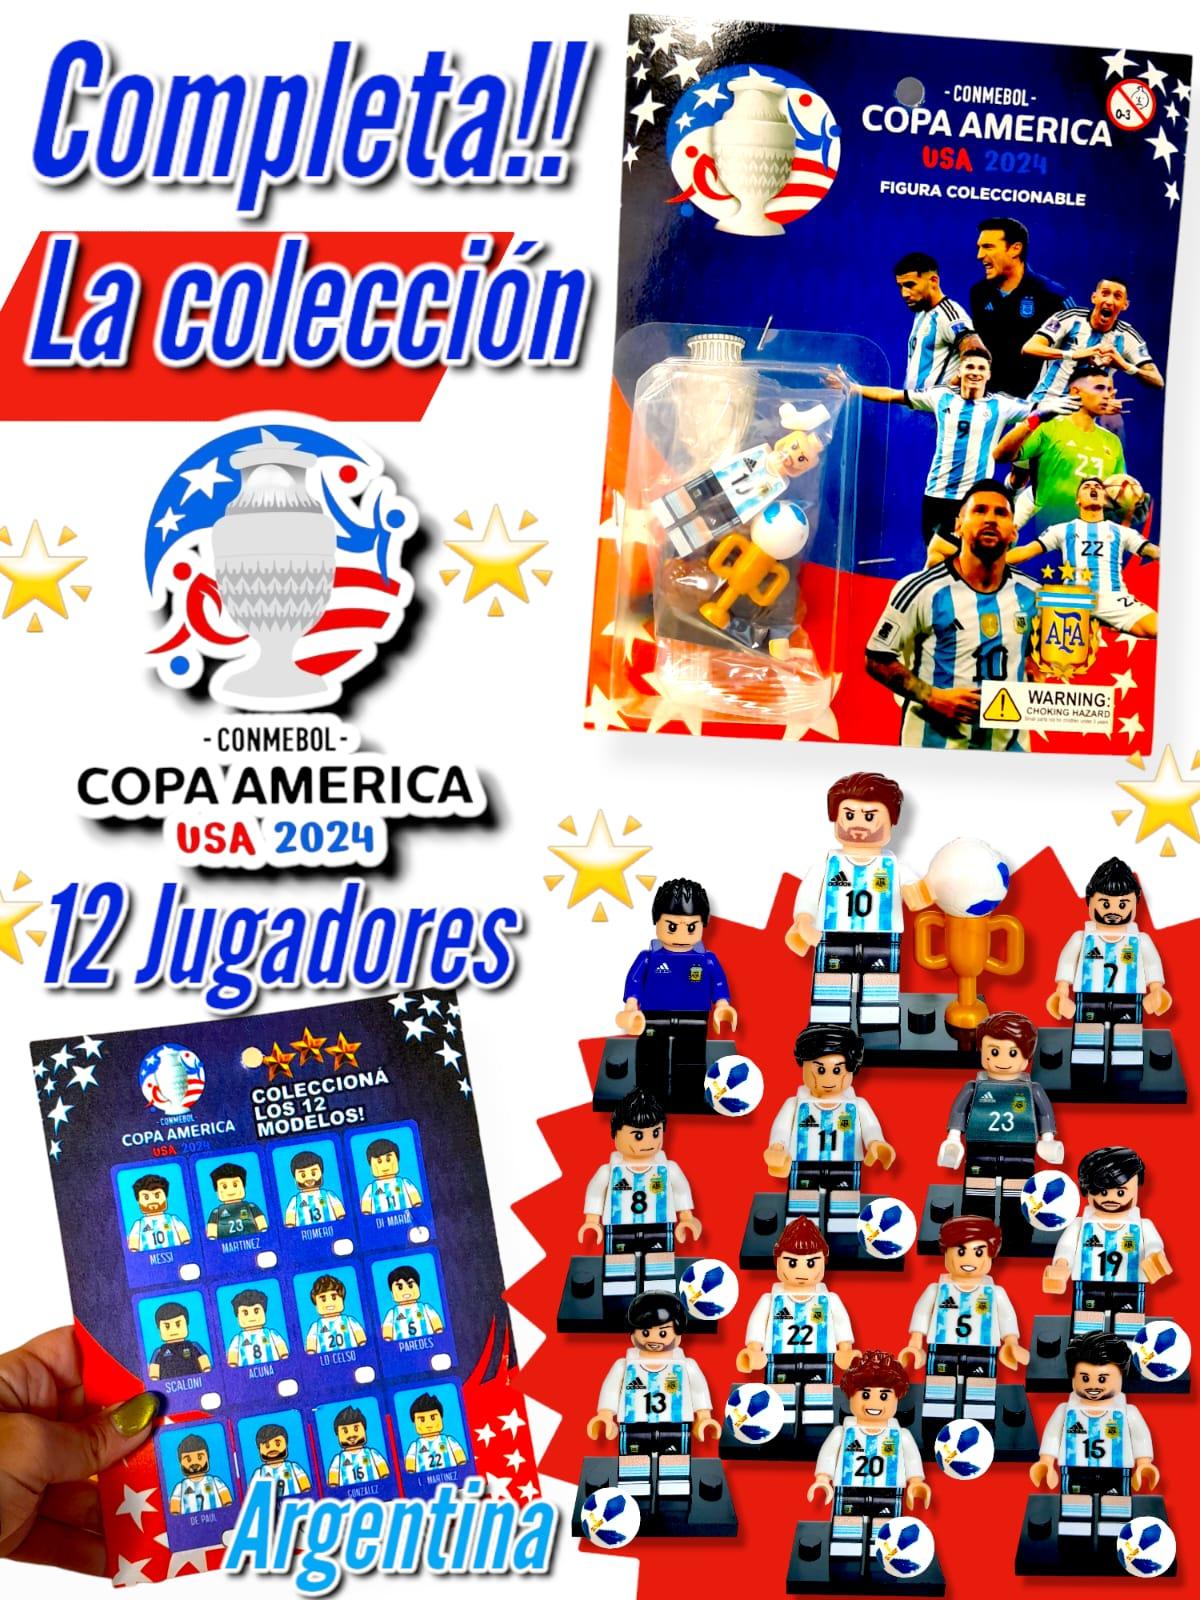 Figura Coleccionable Copa America USA 2024 Argentina (Simil LEGO)